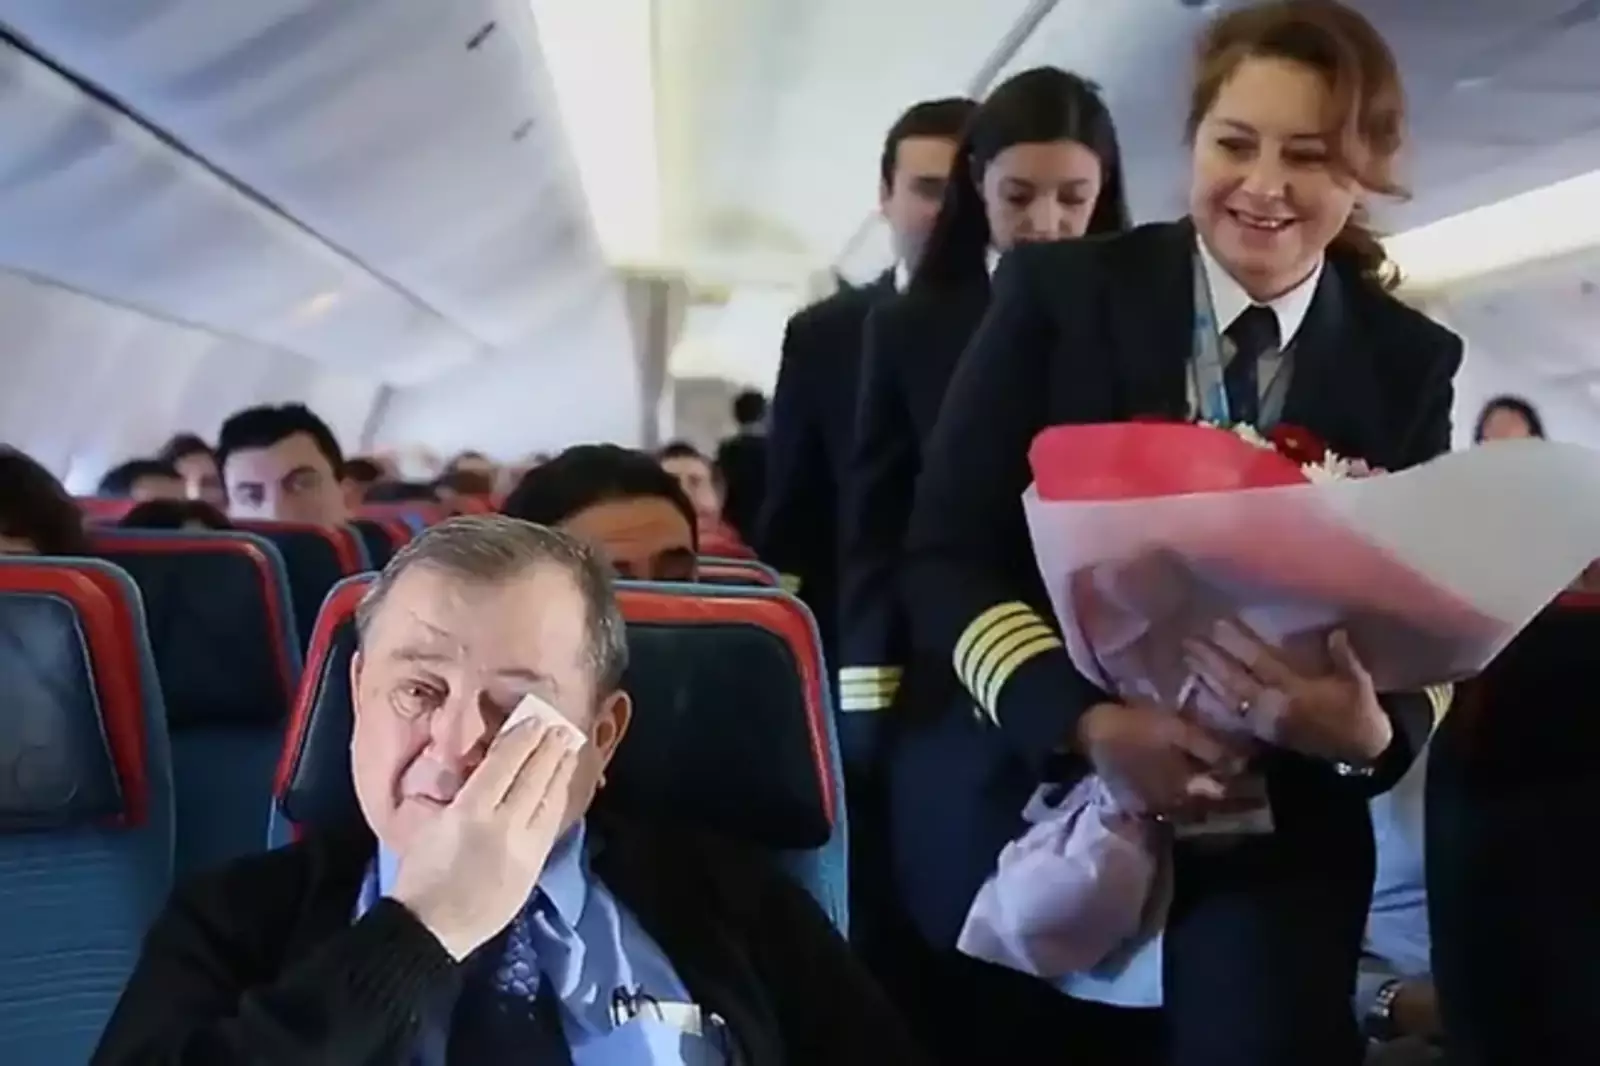 Пилот самолета узнал, что рейсом летит его школьный учитель и решил его поздравить с Днем учителя. Трогательные слова и благодарности довели мужчину до слез. 